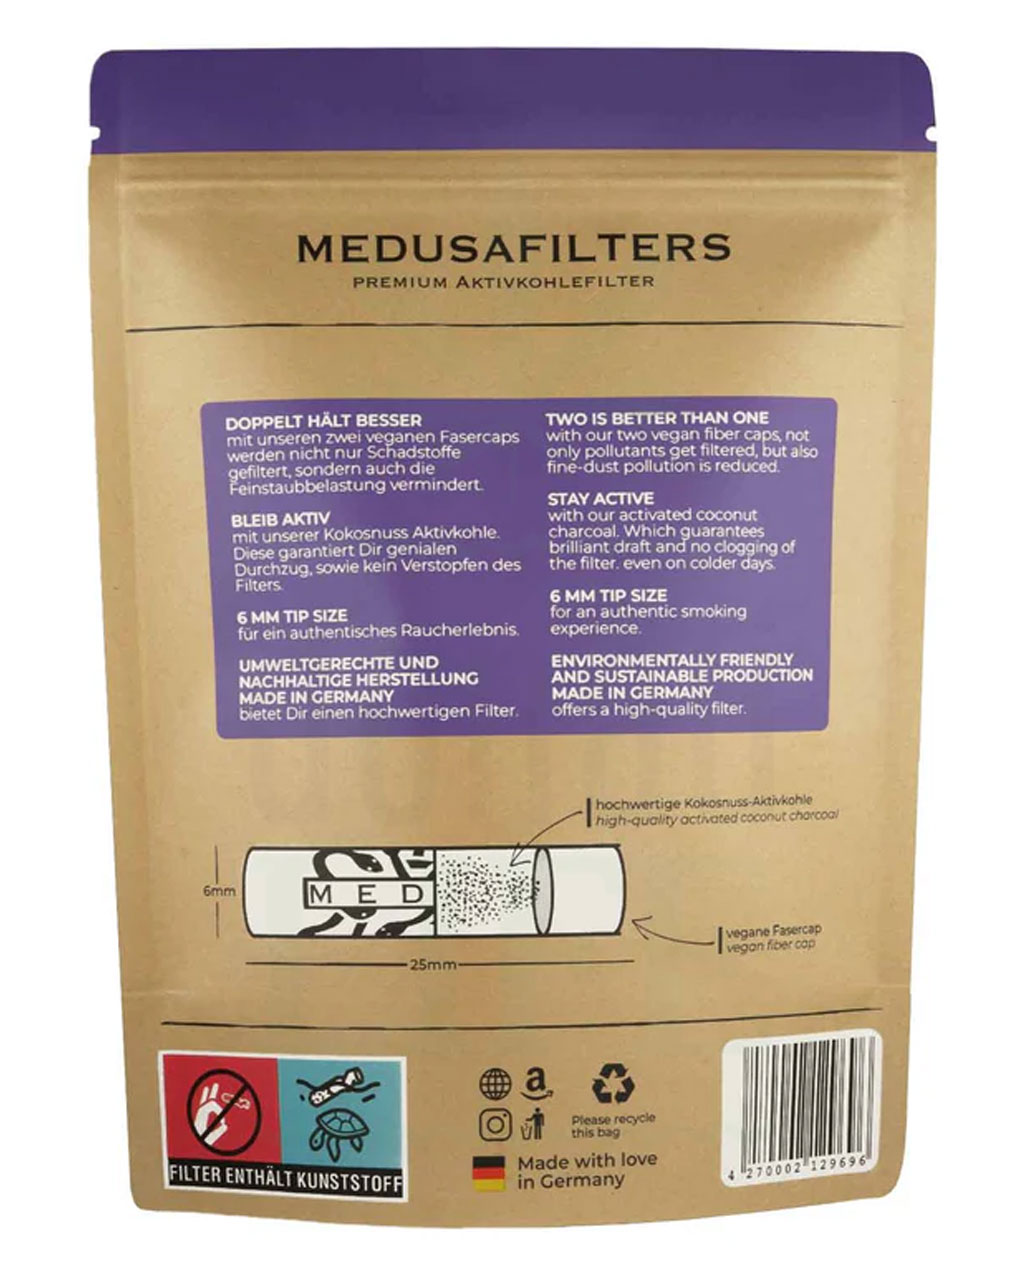 Filter & Aktivkohle MEDUSA FILTERS Aktivkohlefilter 6 mm ‘Mixed Edition’ | 1000 Filter